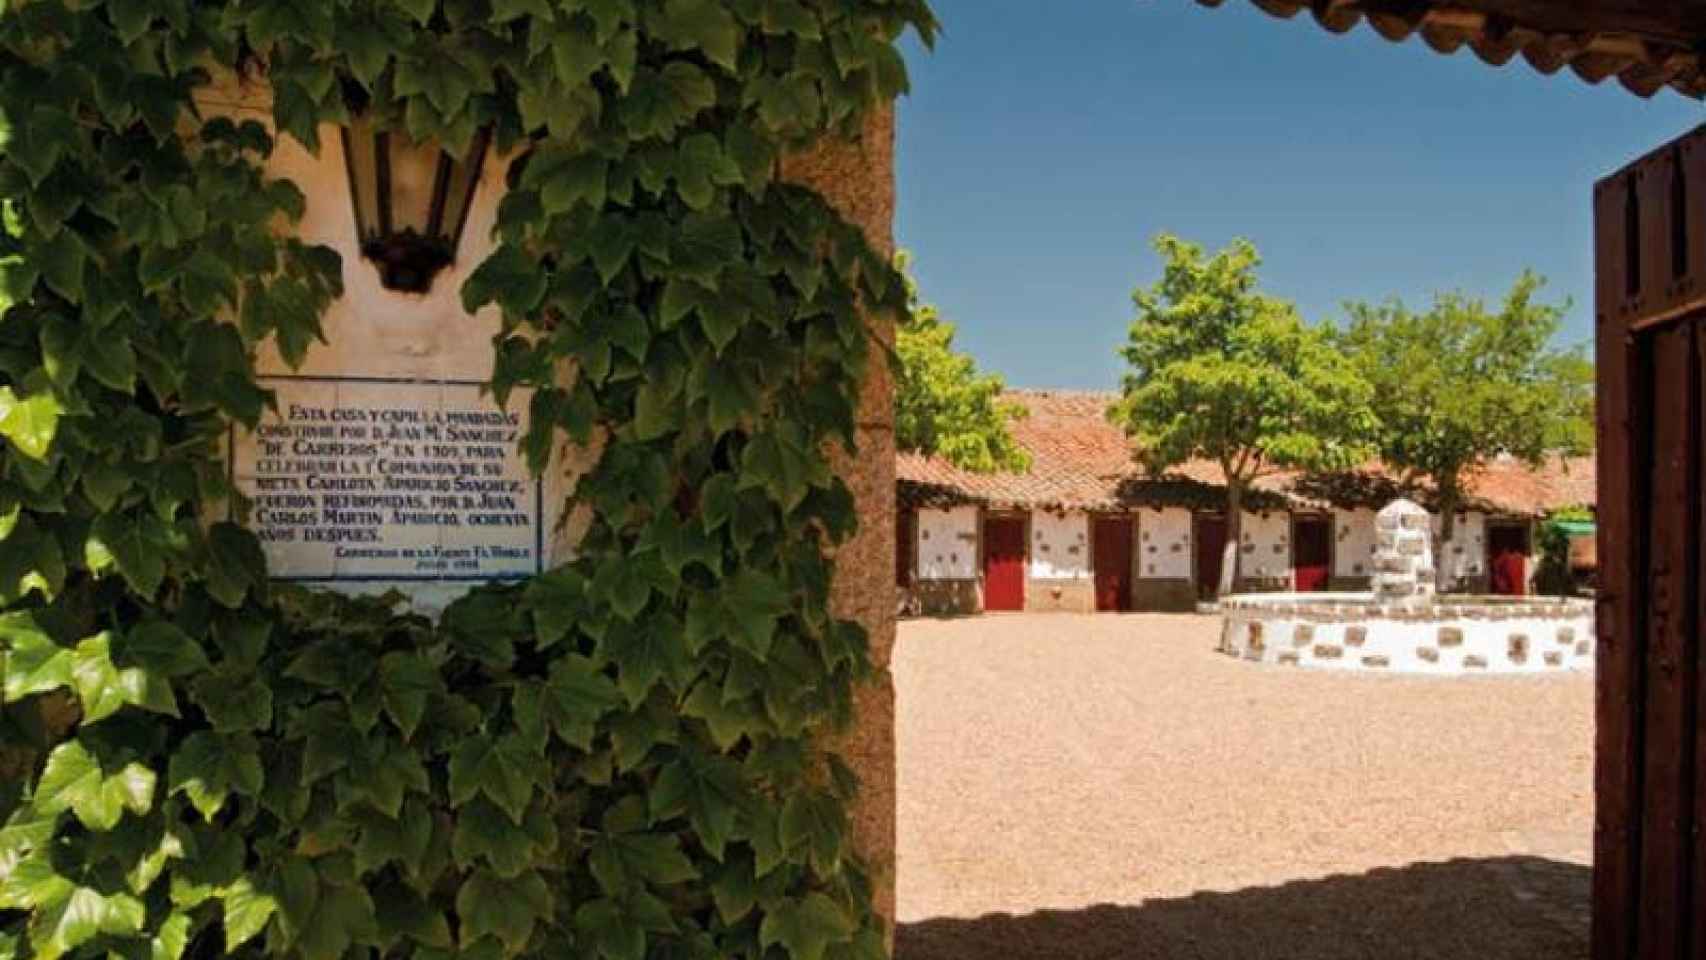 Ganadería Carreros de Fuenterroble, dedicada a la cria del toro de lidia desde mediados del siglo XIX (1840)